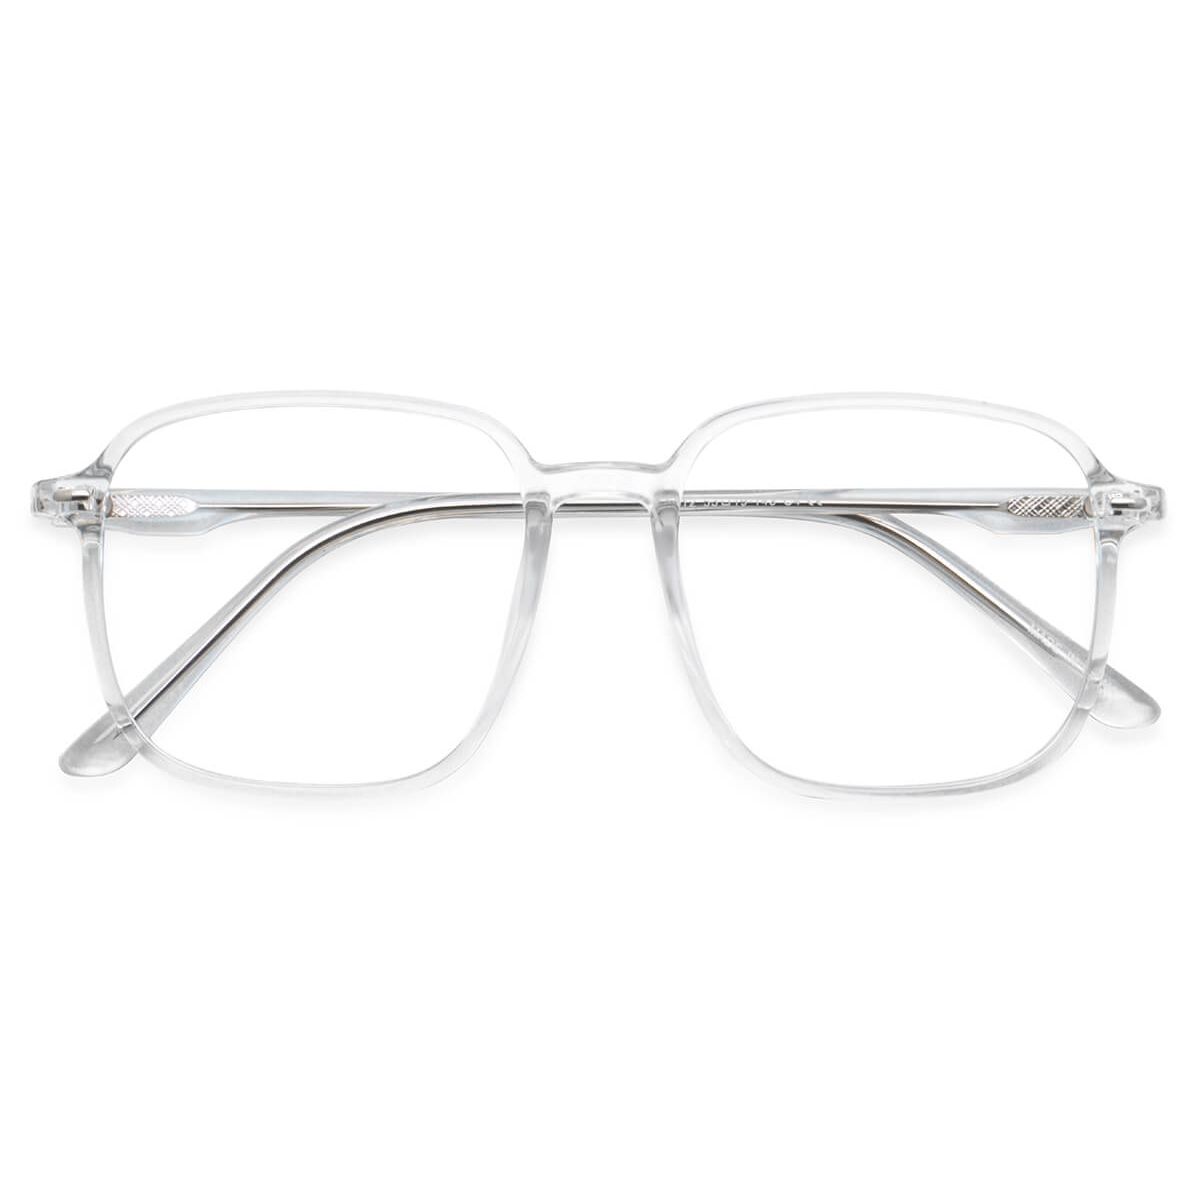 60144 Square Clear Eyeglasses Frames | Leoptique